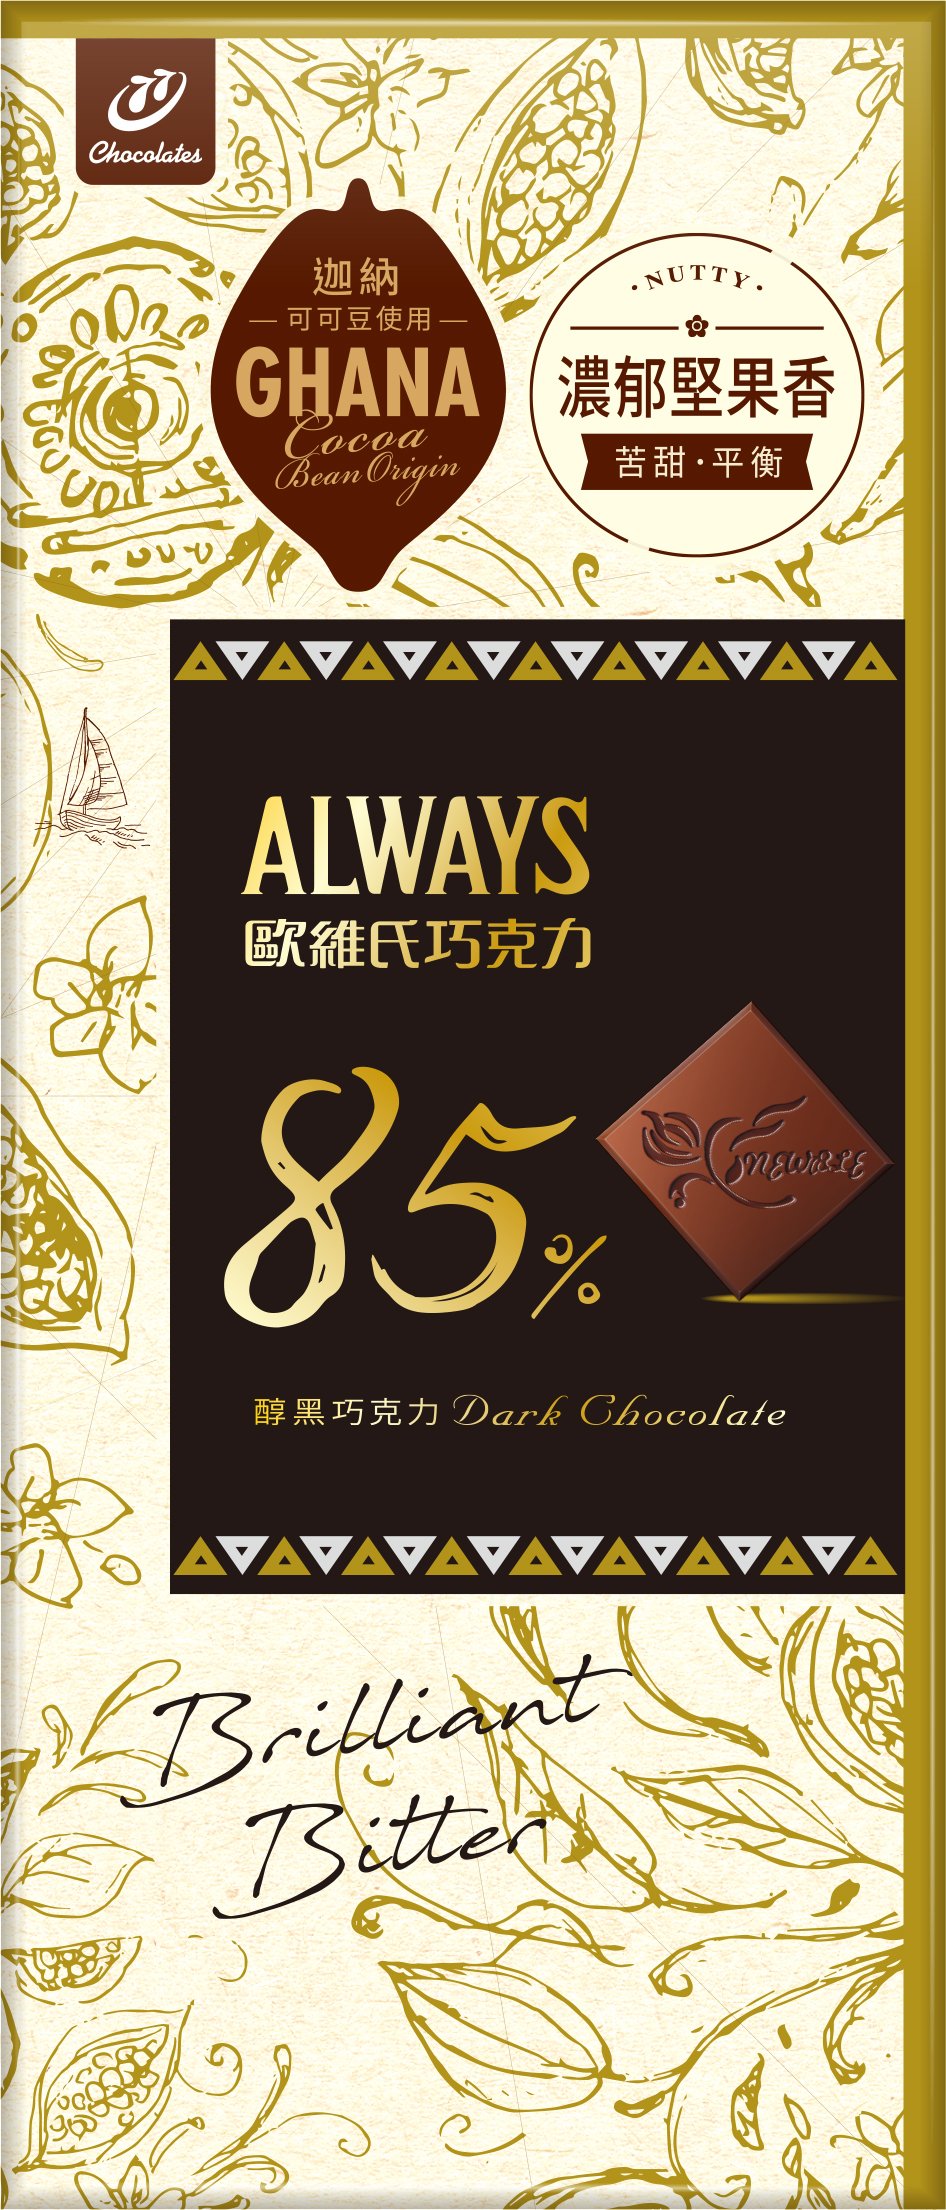 歐維氏-85%醇黑巧克力-77g.jpg